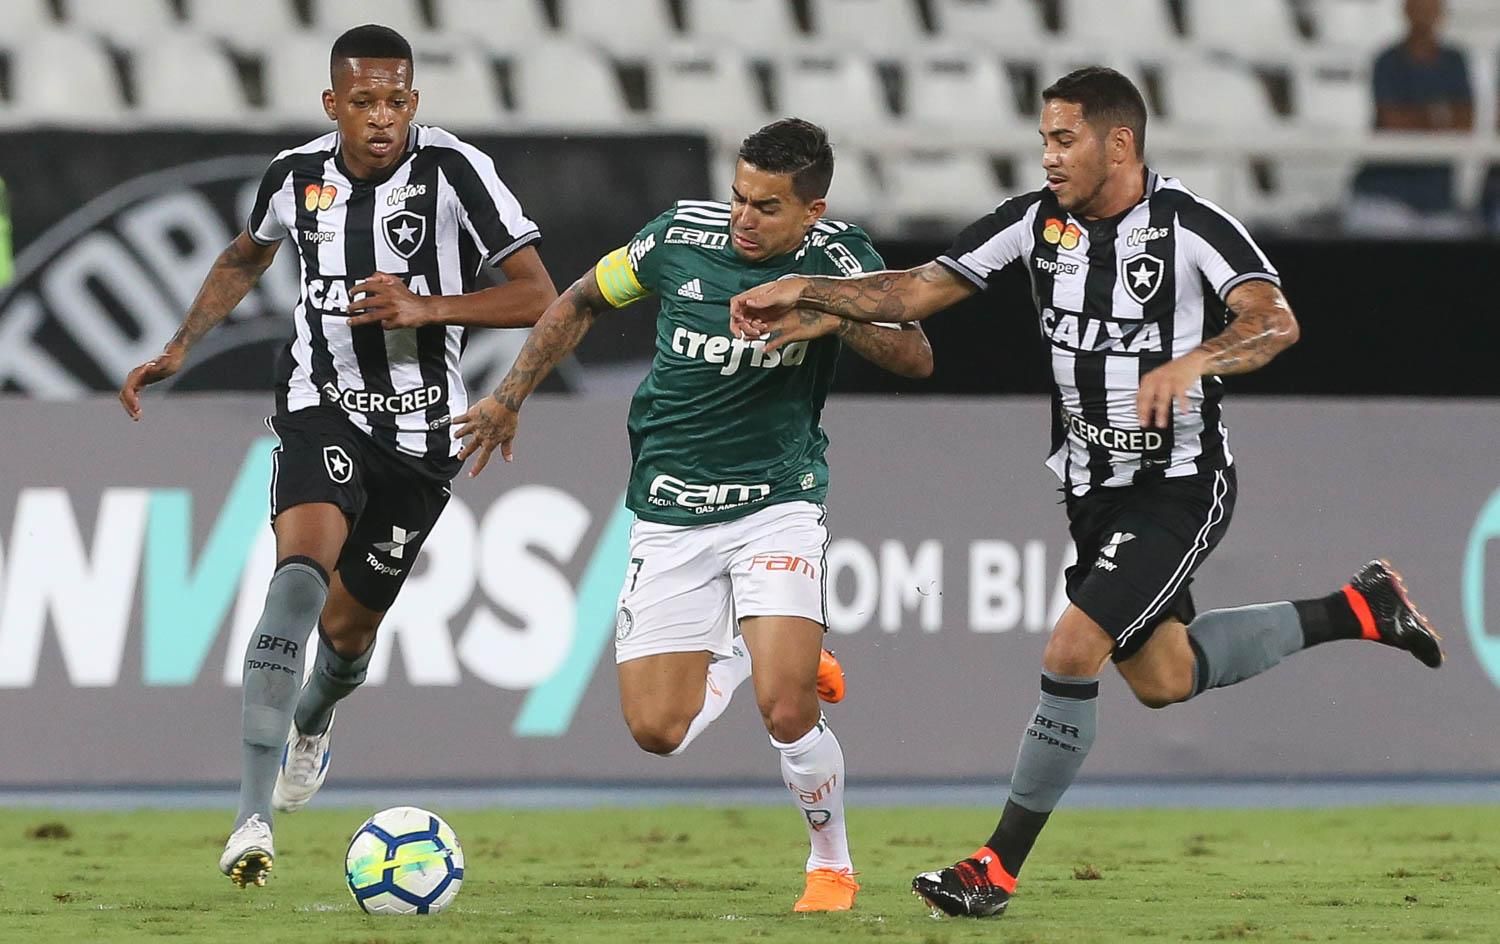 Cruzeiro mandante ainda preocupa; veja números e jogos em casa no returno